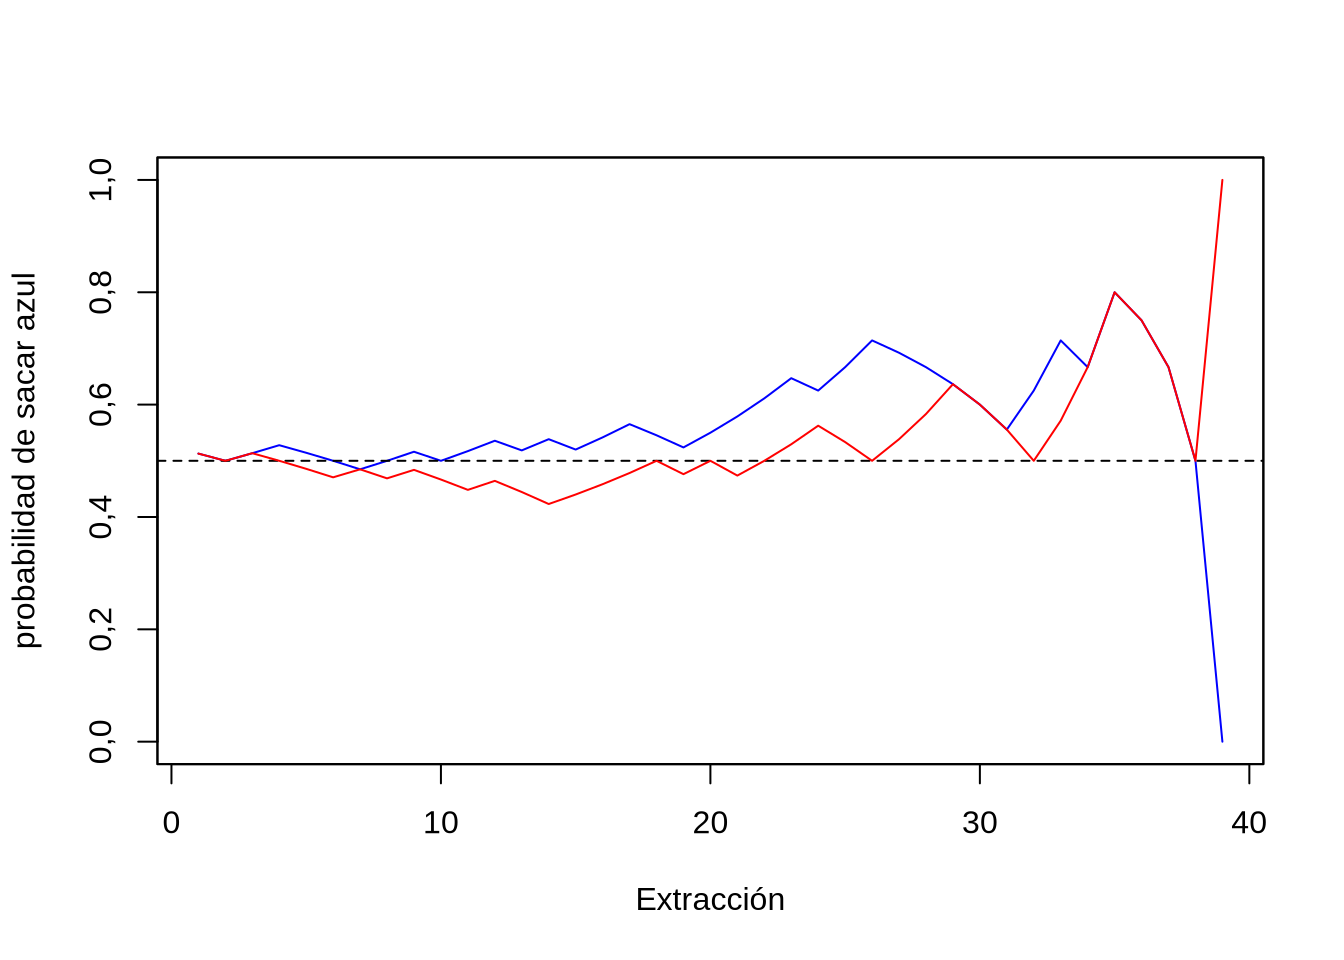 Probabilidad de sacar una bolita azul en la próxima extracción, para un nuevo experimento (en rojo), con las mismas condiciones iniciales.